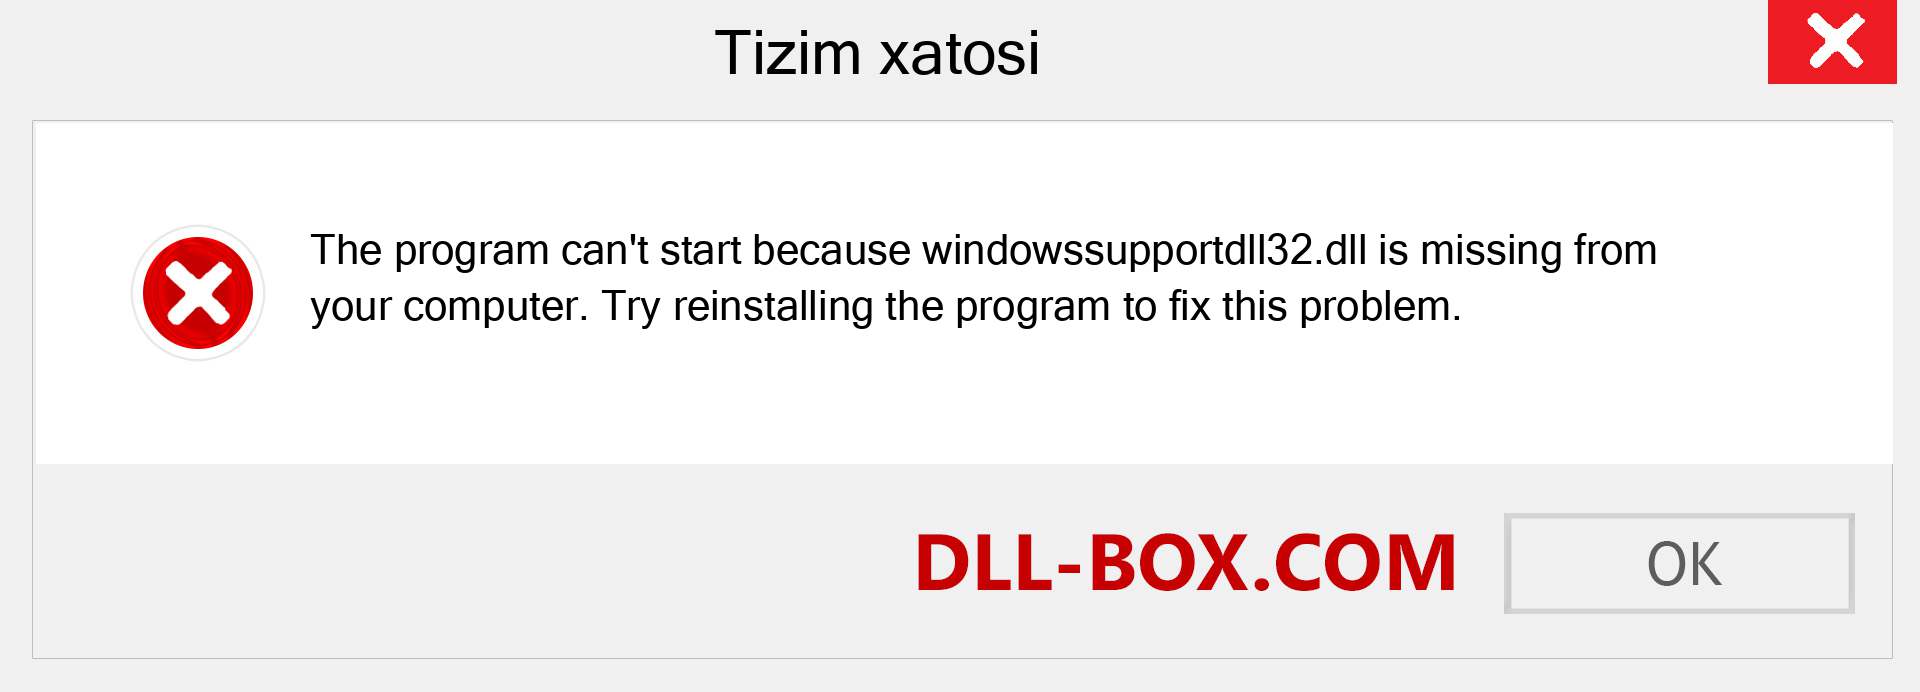 windowssupportdll32.dll fayli yo'qolganmi?. Windows 7, 8, 10 uchun yuklab olish - Windowsda windowssupportdll32 dll etishmayotgan xatoni tuzating, rasmlar, rasmlar